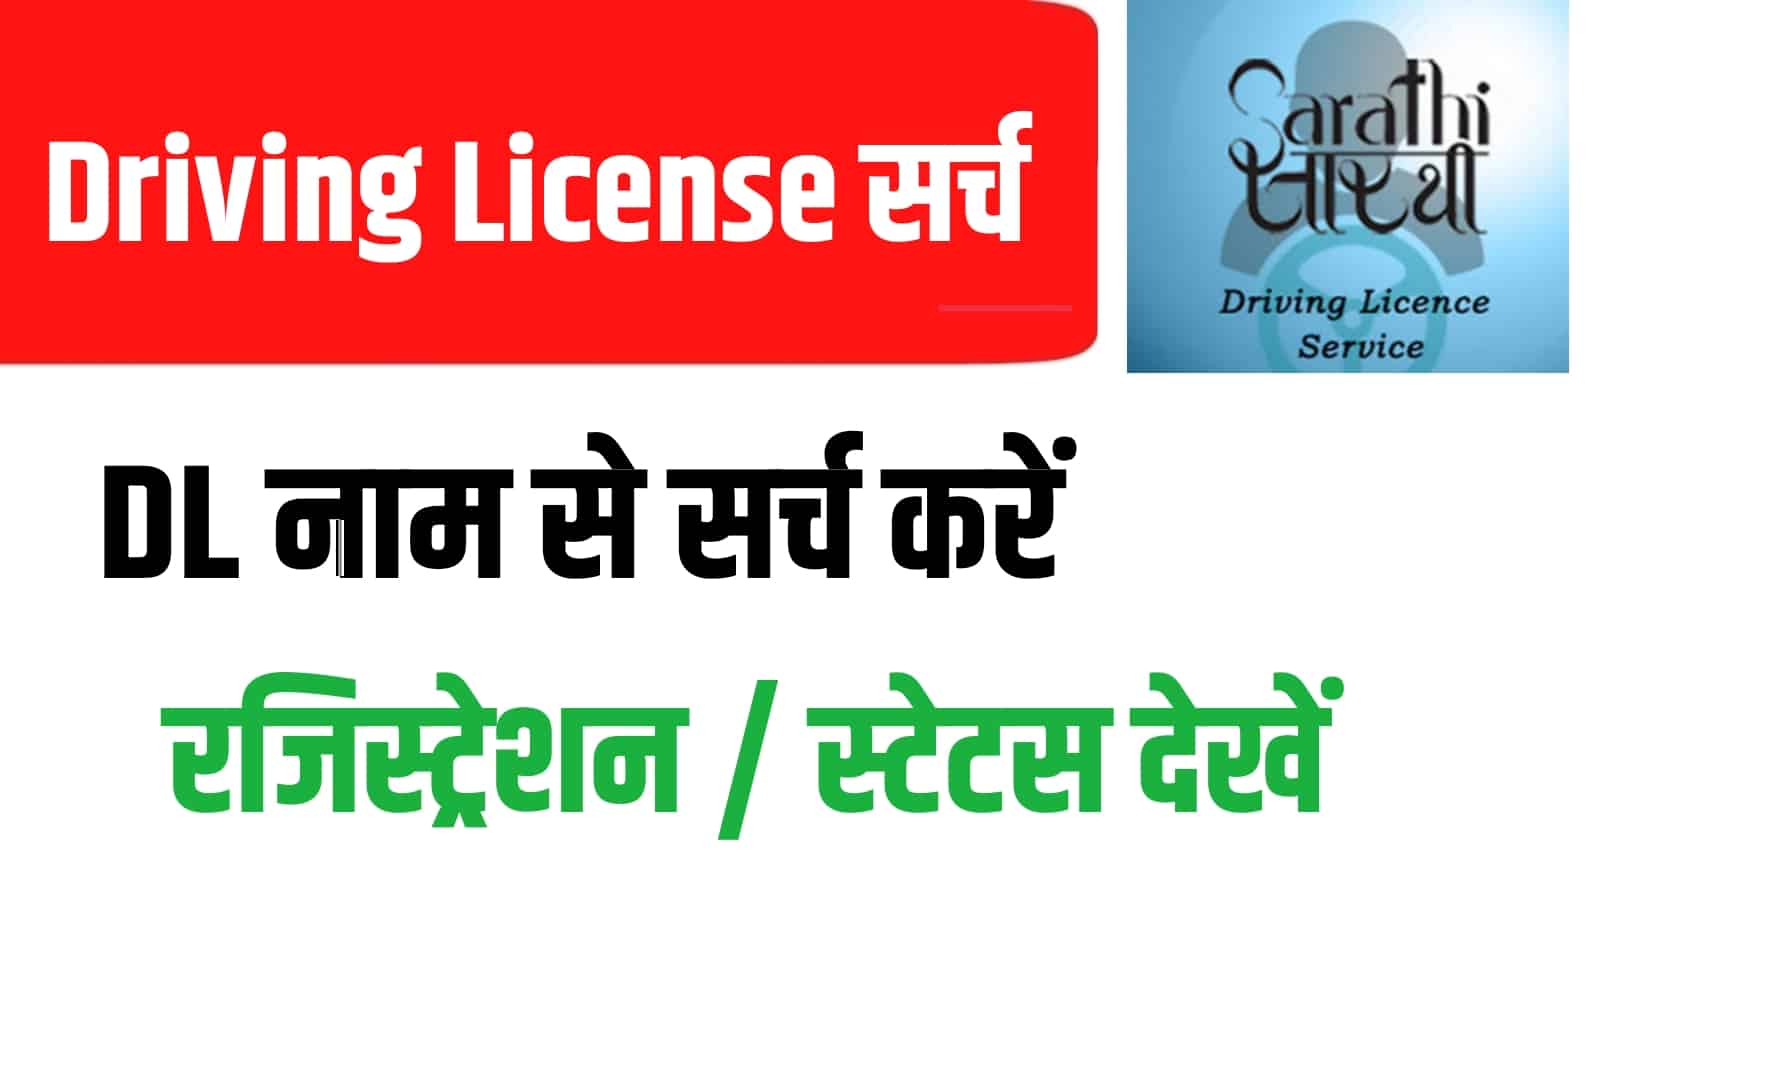 Driving Licence Check by Name & Address | नाम और पते से ड्राइविंग लाइसेंस खोजें